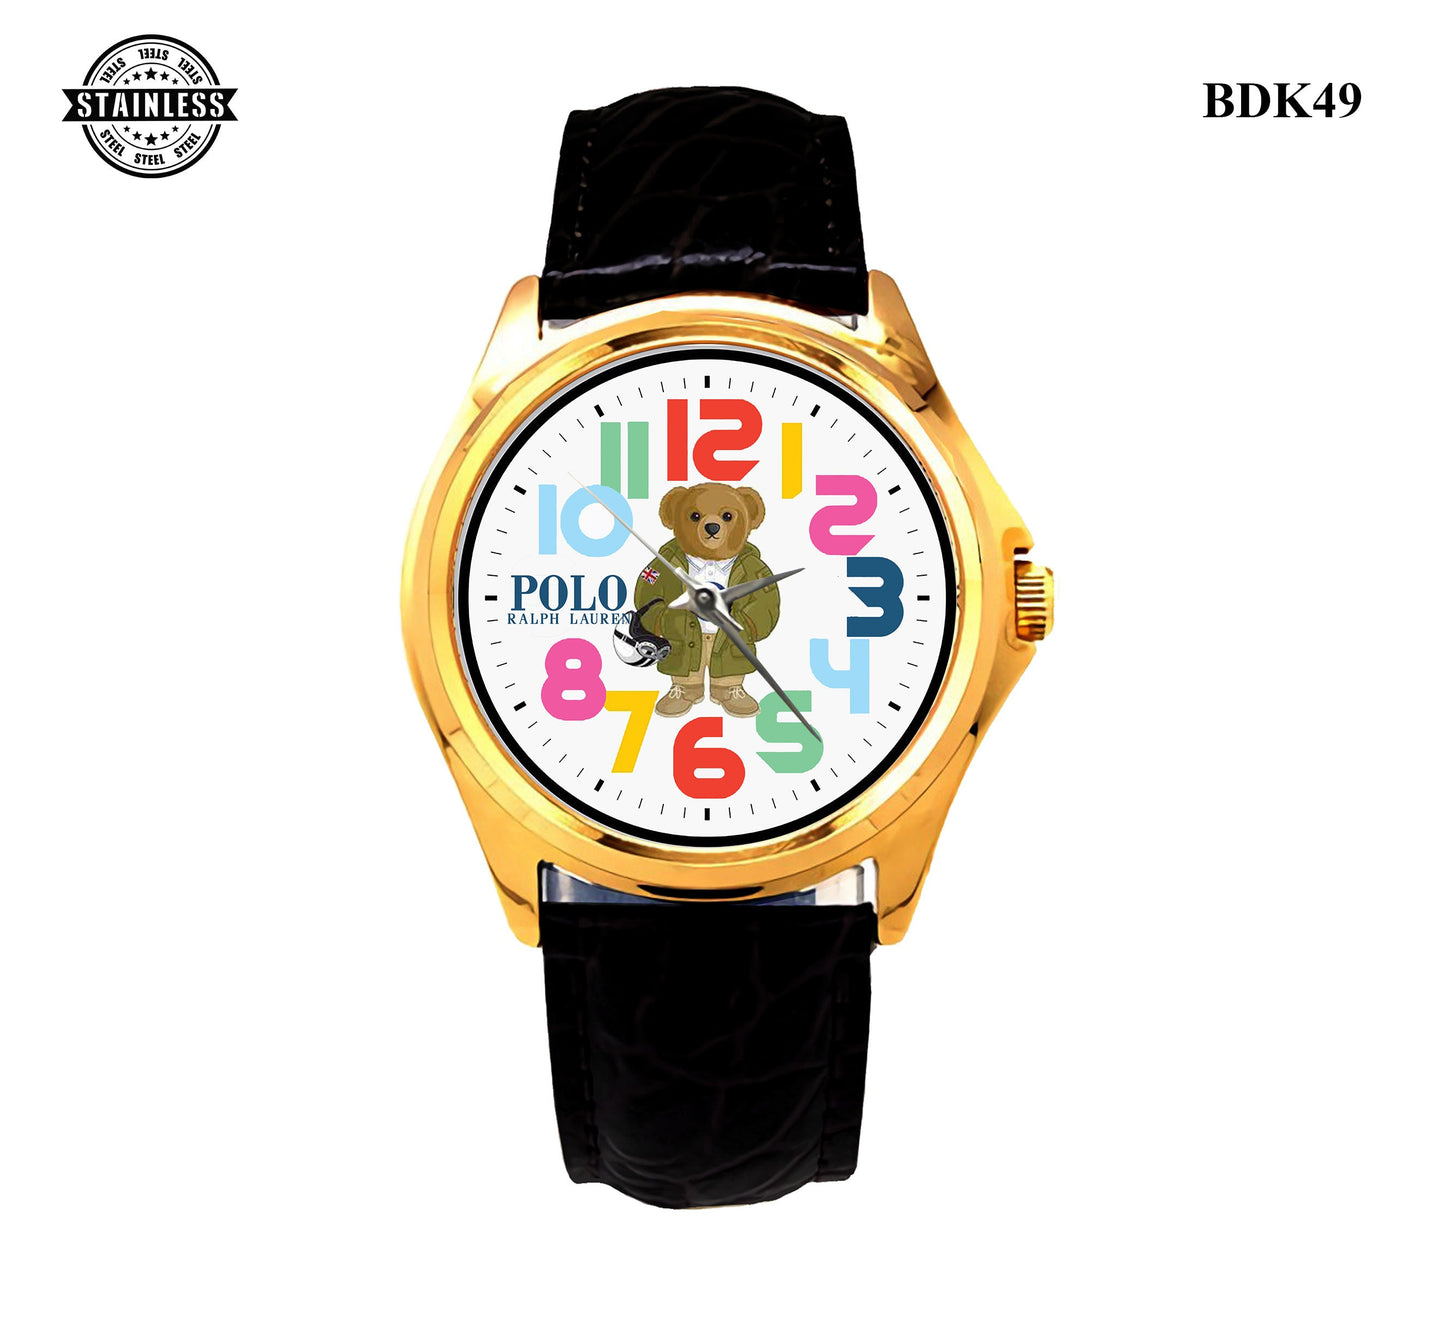 Polo Ralph Lauren Bear Sport Metal Watch Bdk49-2